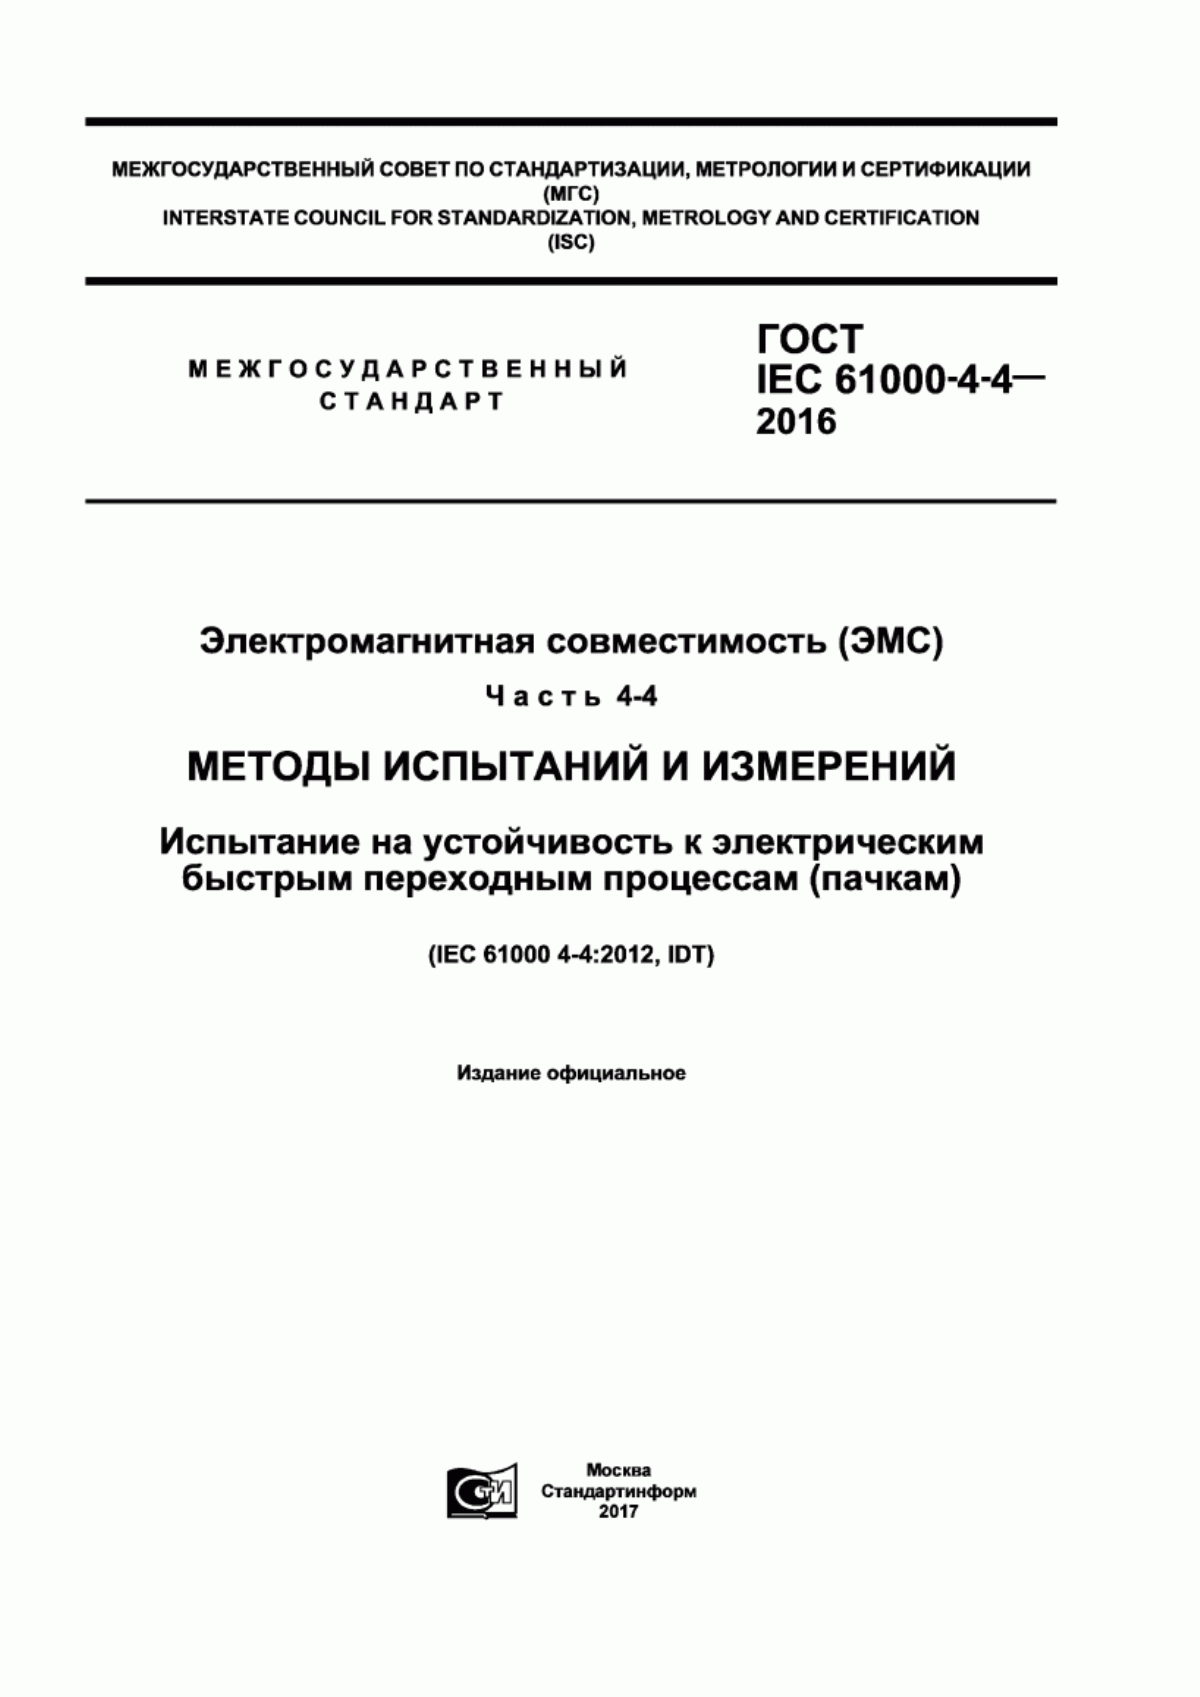 ГОСТ IEC 61000-4-4-2016 Электромагнитная совместимость (ЭМС). Часть 4-4. Методы испытаний и измерений. Испытание на устойчивость к электрическим быстрым переходным процессам (пачкам)